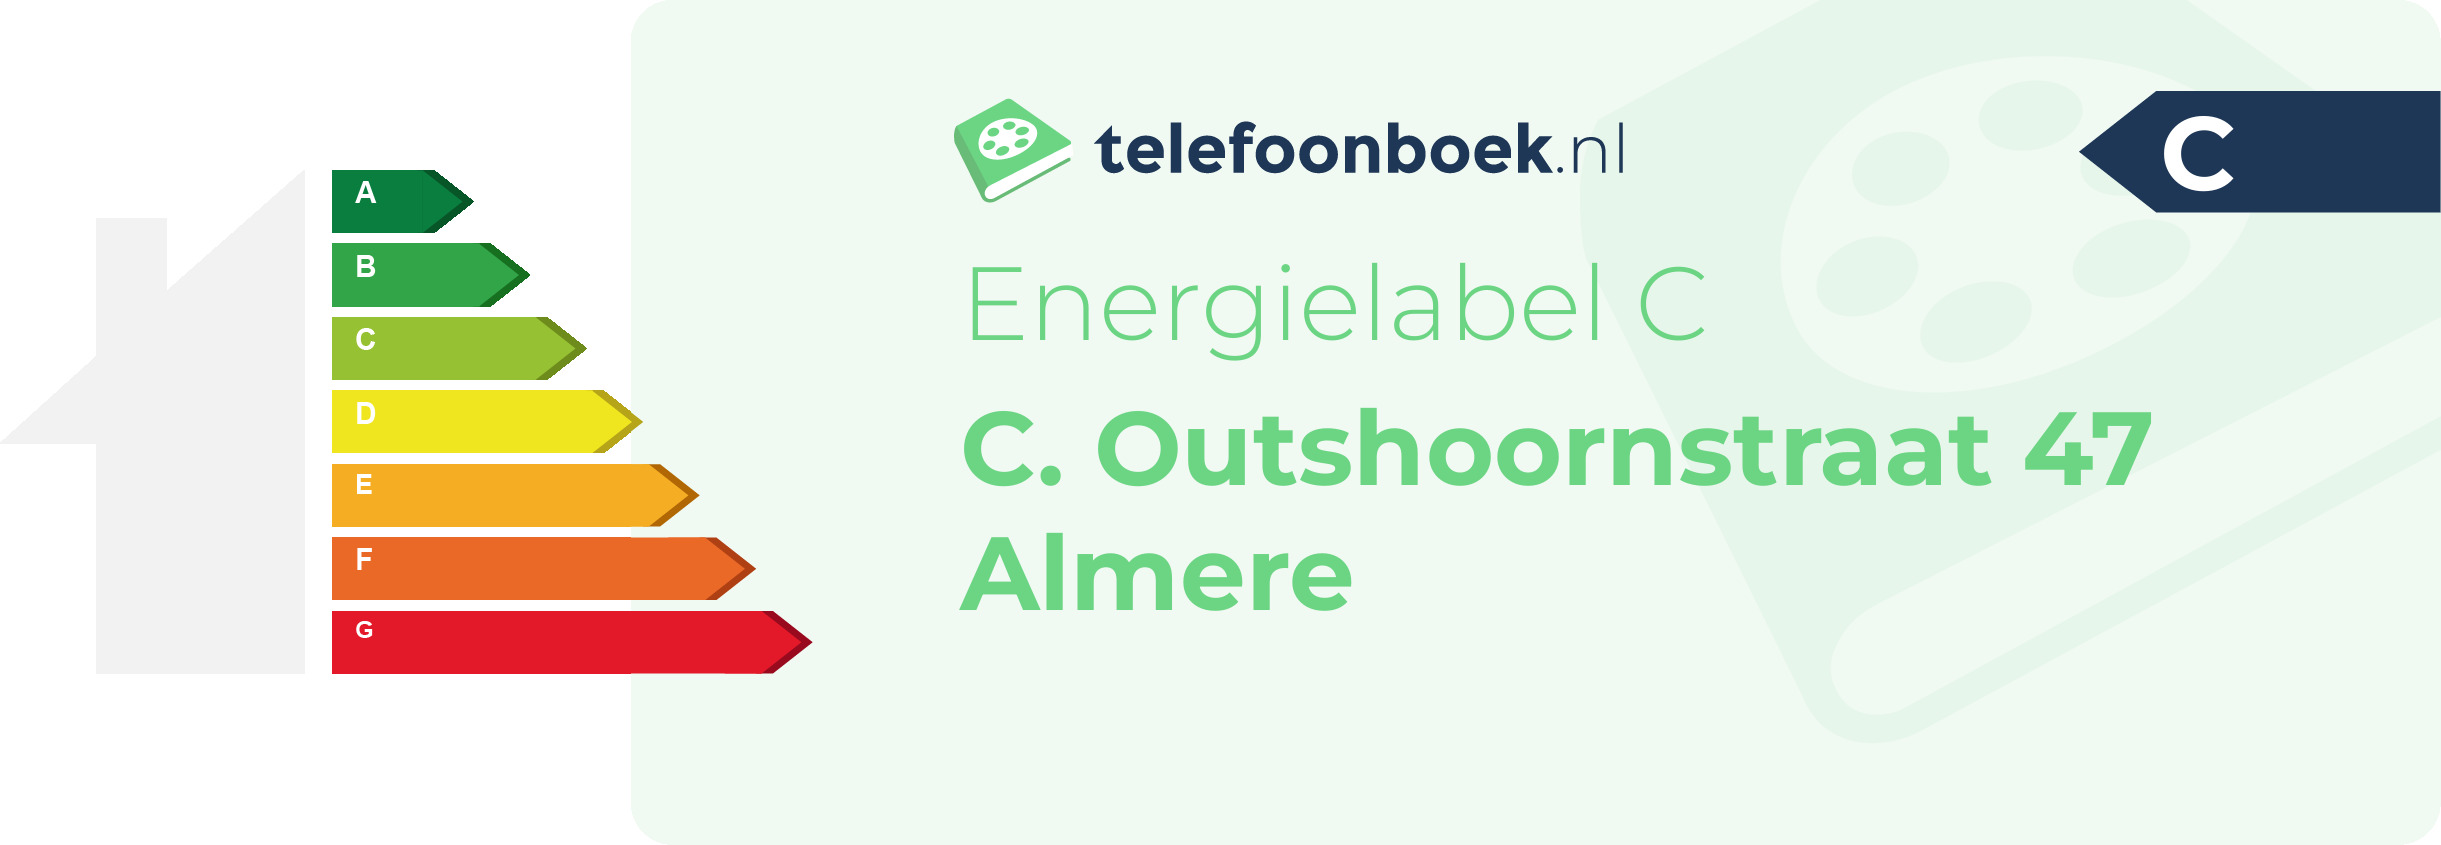 Energielabel C. Outshoornstraat 47 Almere